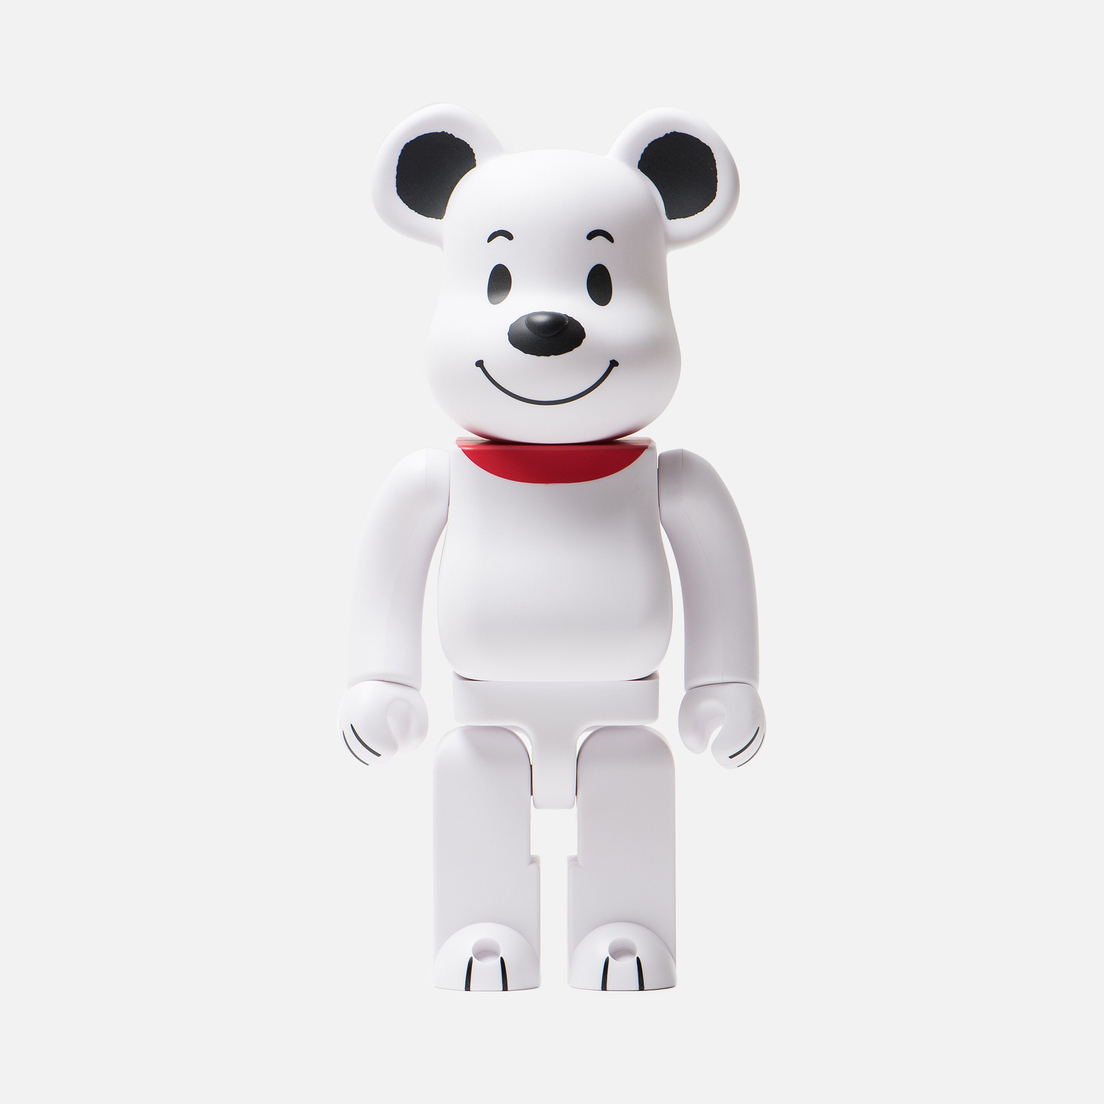 Medicom Toy Игрушка Bearbrick Snoopy 400%